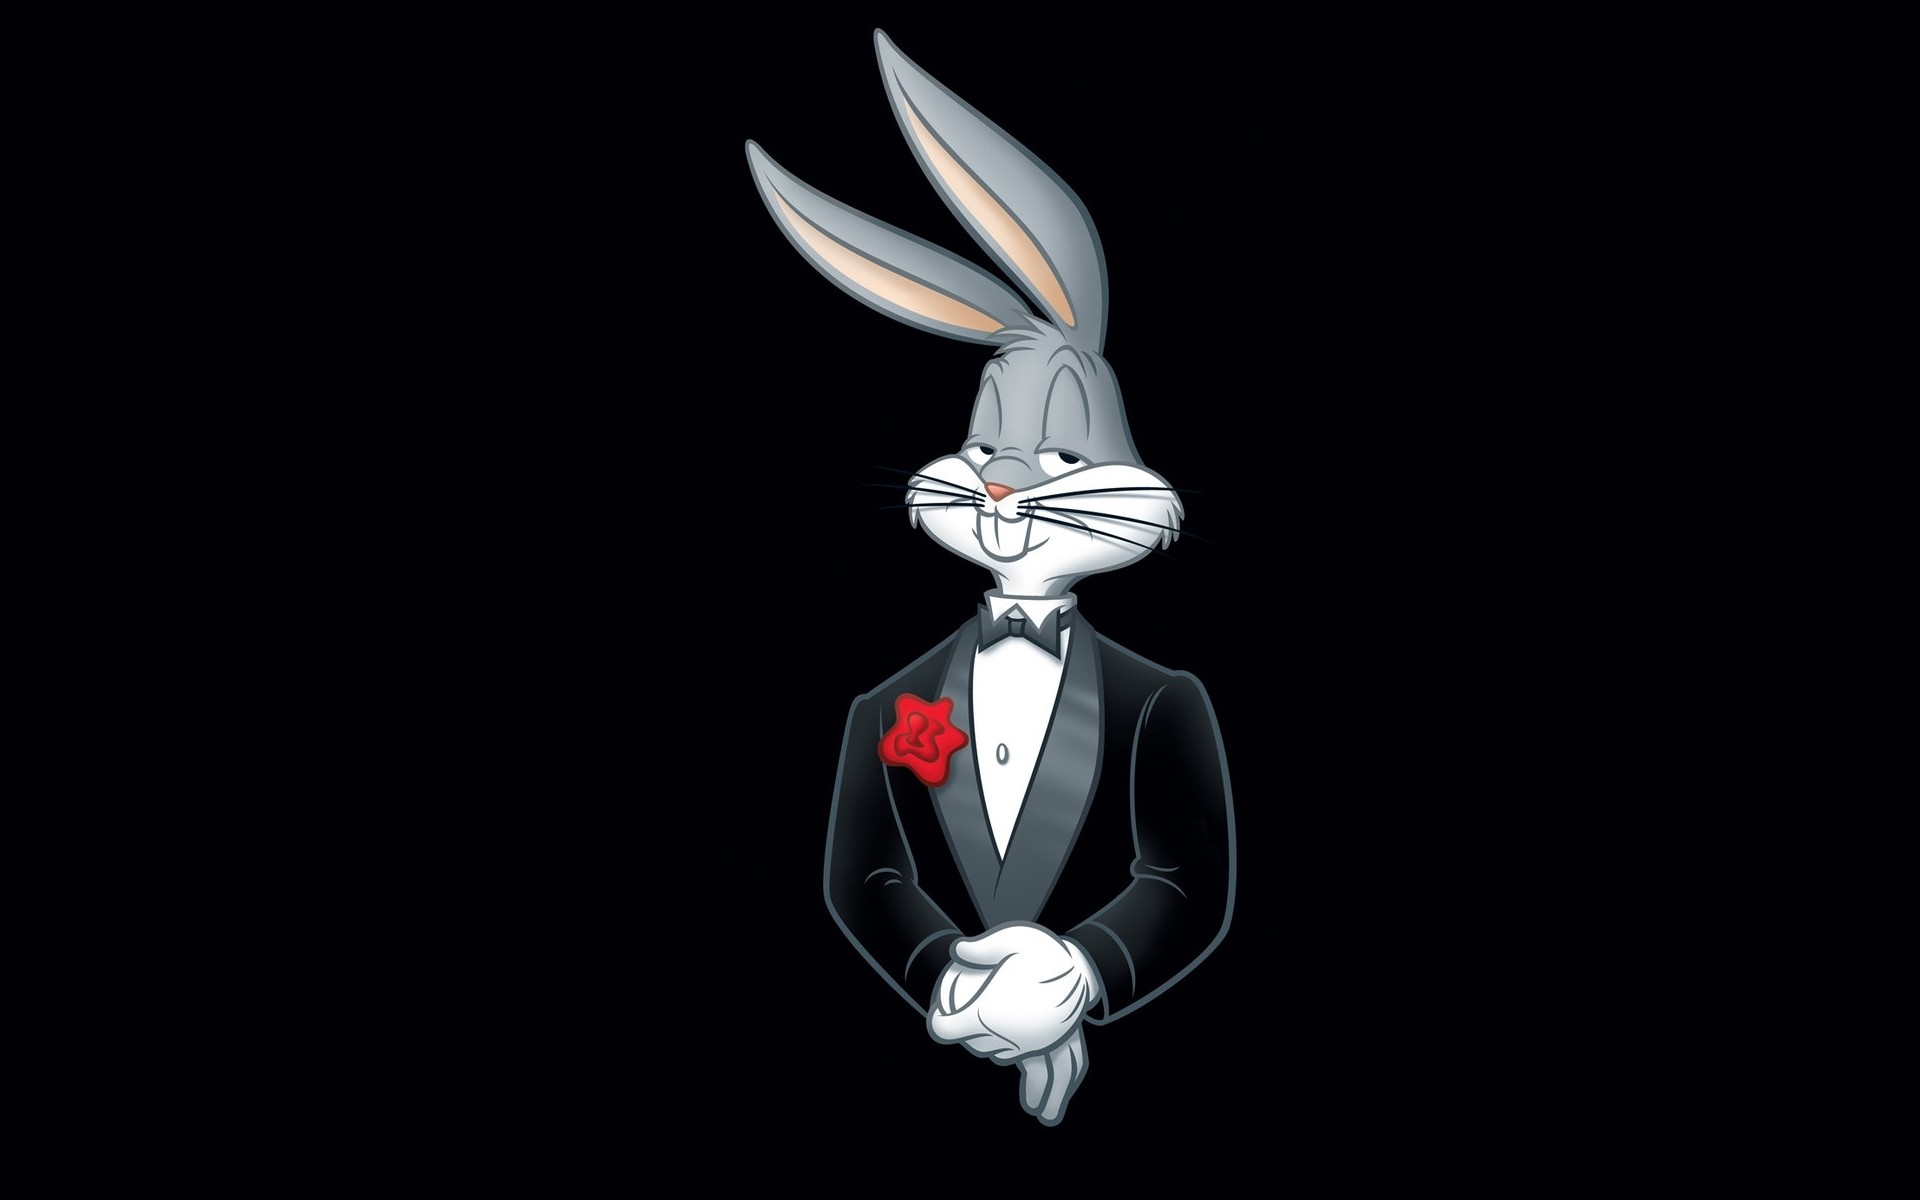 Cartoon Cartoon Bugs Bunny Warner Brothers Suits Rabbits Looney Tunes 1920x1200